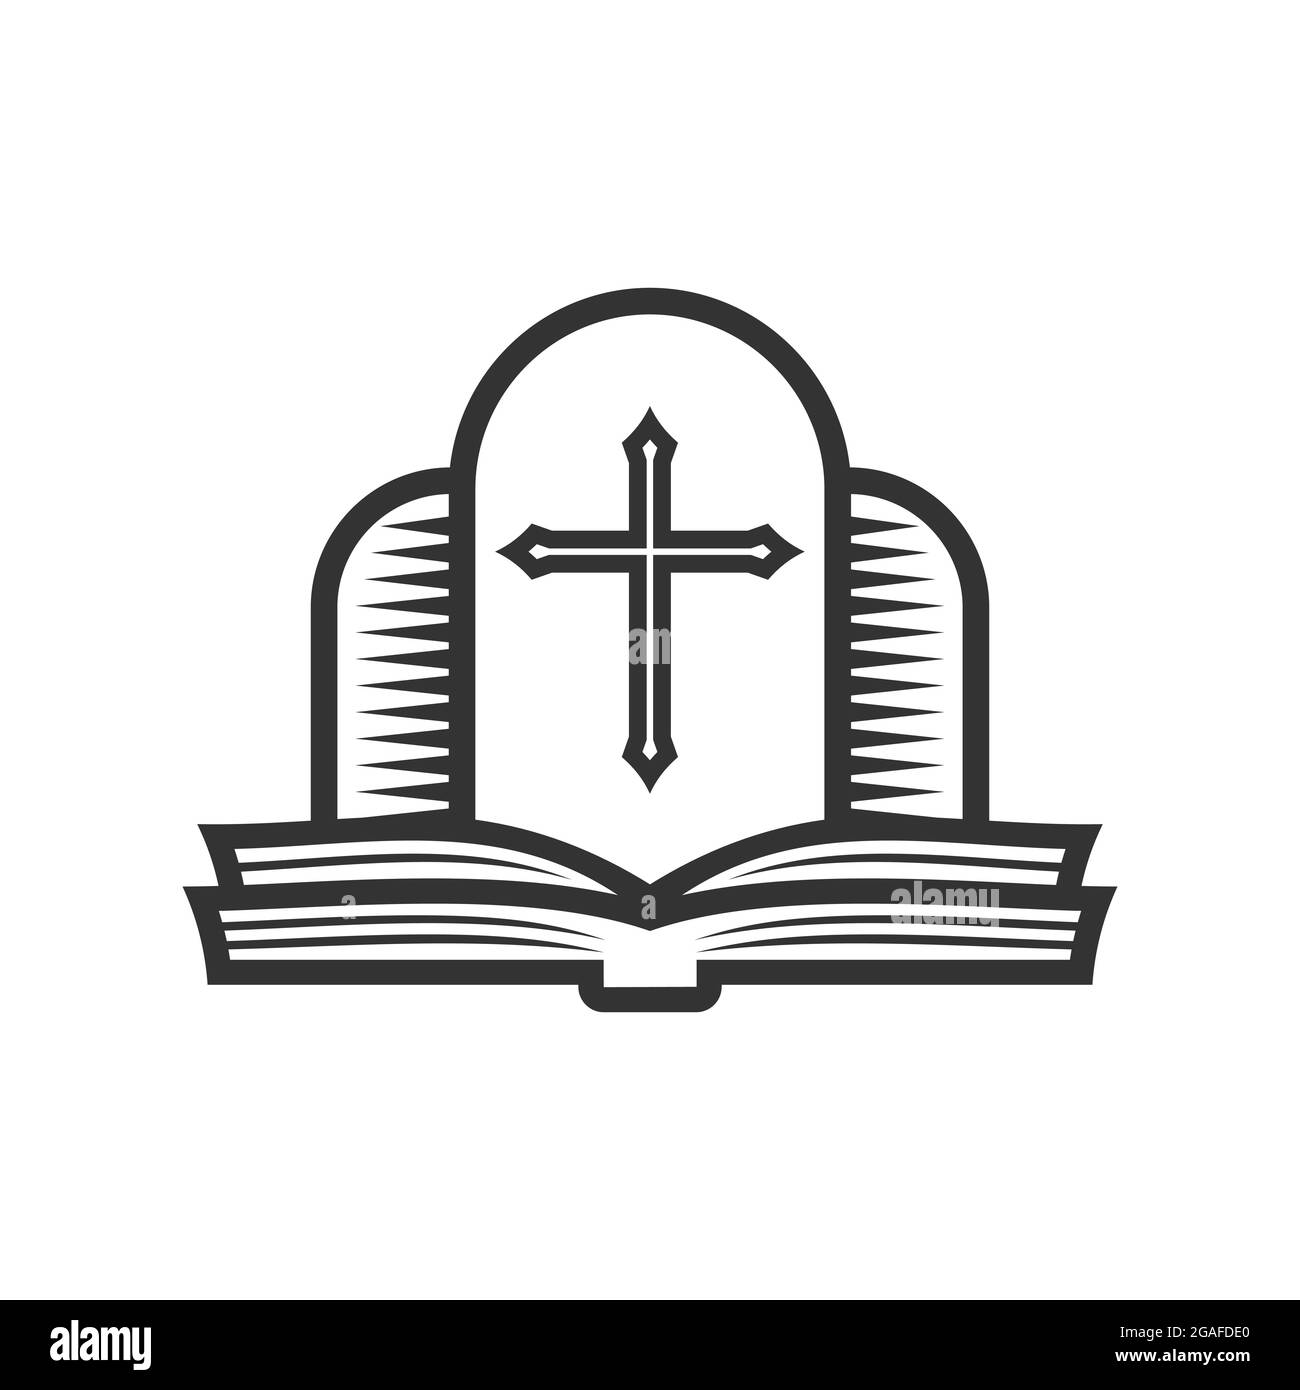 Christliche Illustration. Kirchenlogo. Kreuz des Herrn Jesus Christus und offene bibel. Stock Vektor